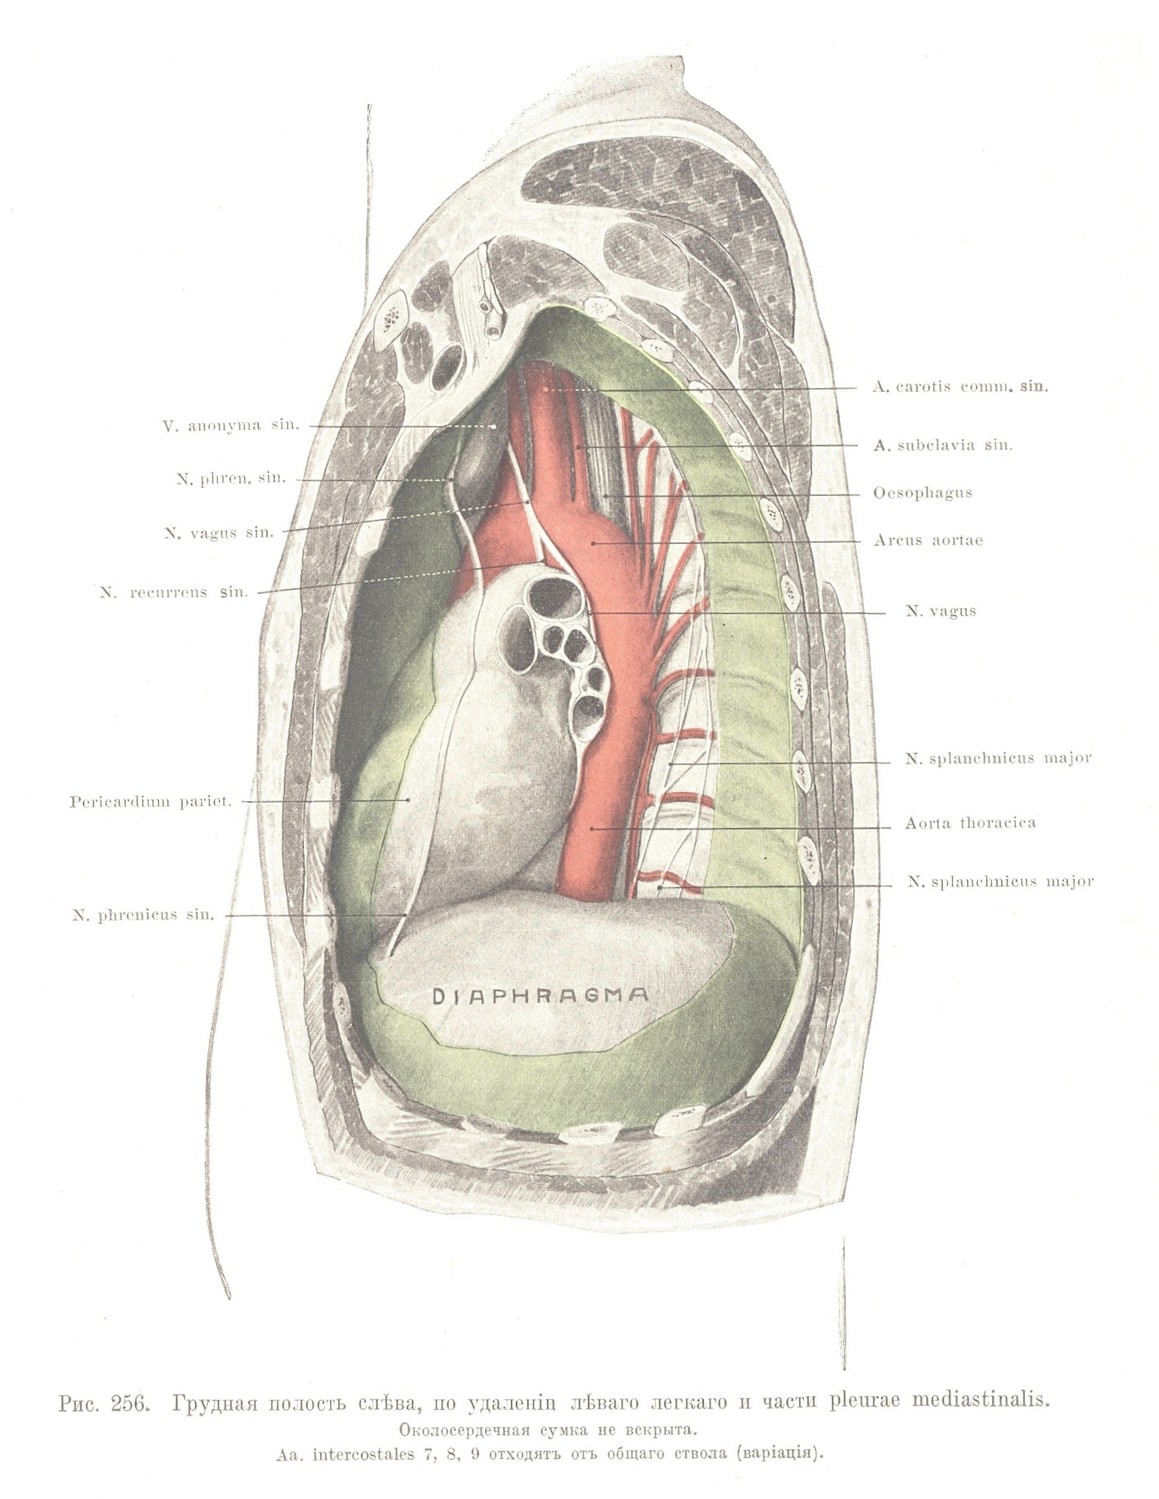 Грудная полость слѣва, по удаленіи лѣваго легкаго и части pleurae mediastinalis. Околосердечная сумка не вскрыта.